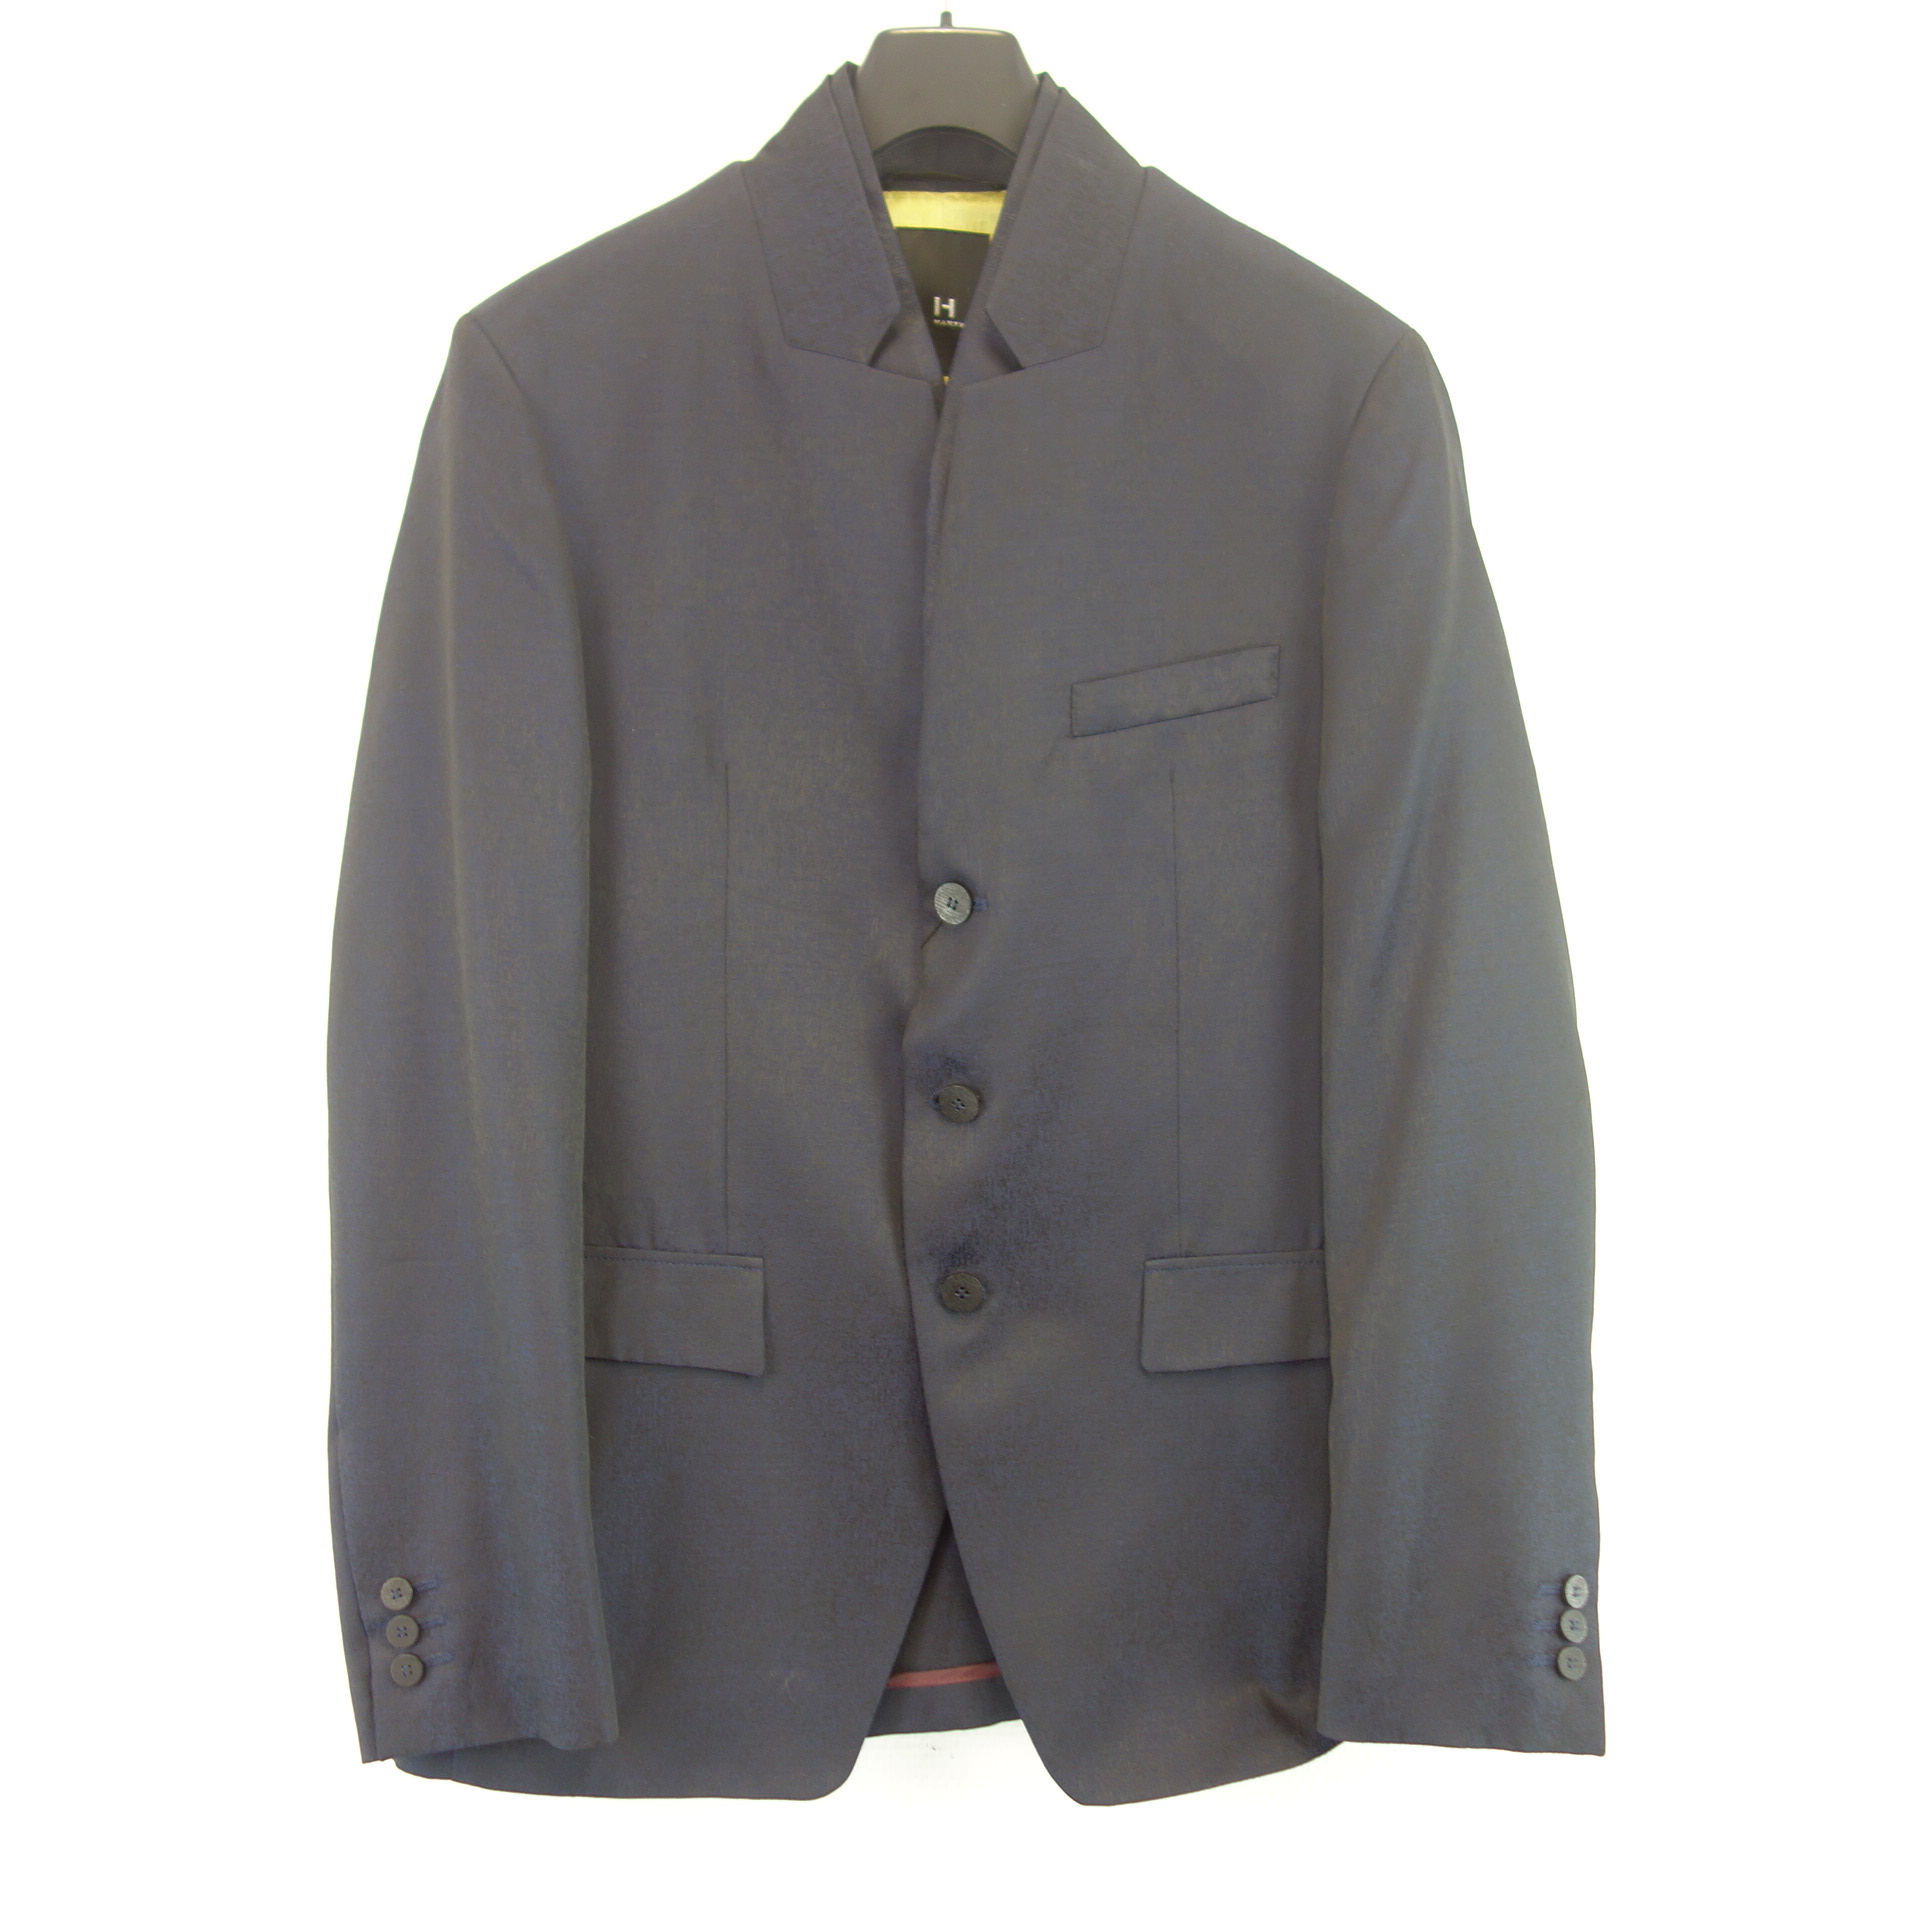 HARTWICH Herren Jacke Sakko Jacket Größe 50 Modell Sagezza Grau Elegant